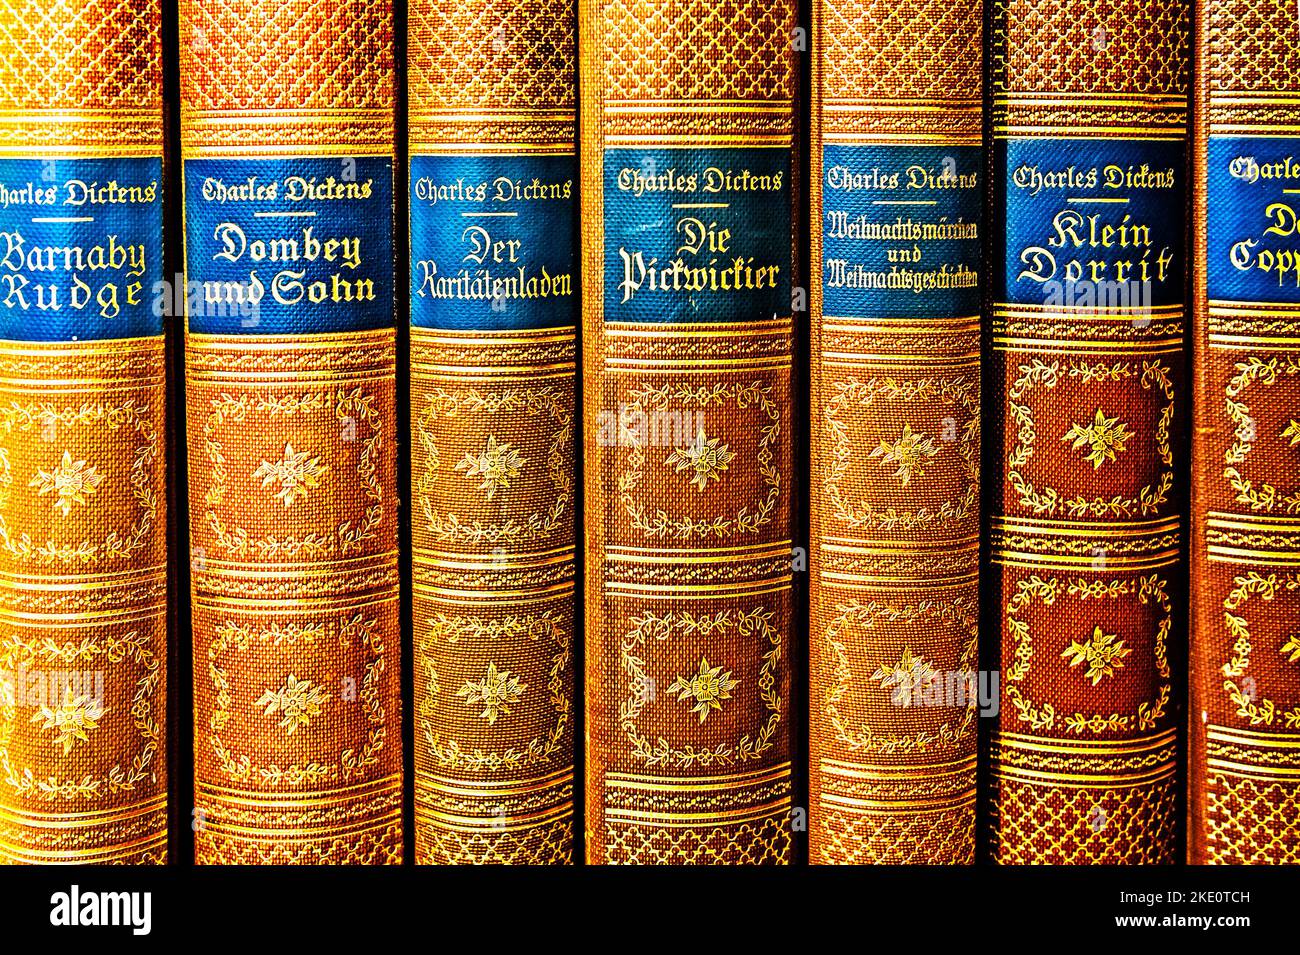 Die Werke von Charles Dickens; Obras de Charles Dickens Foto de stock